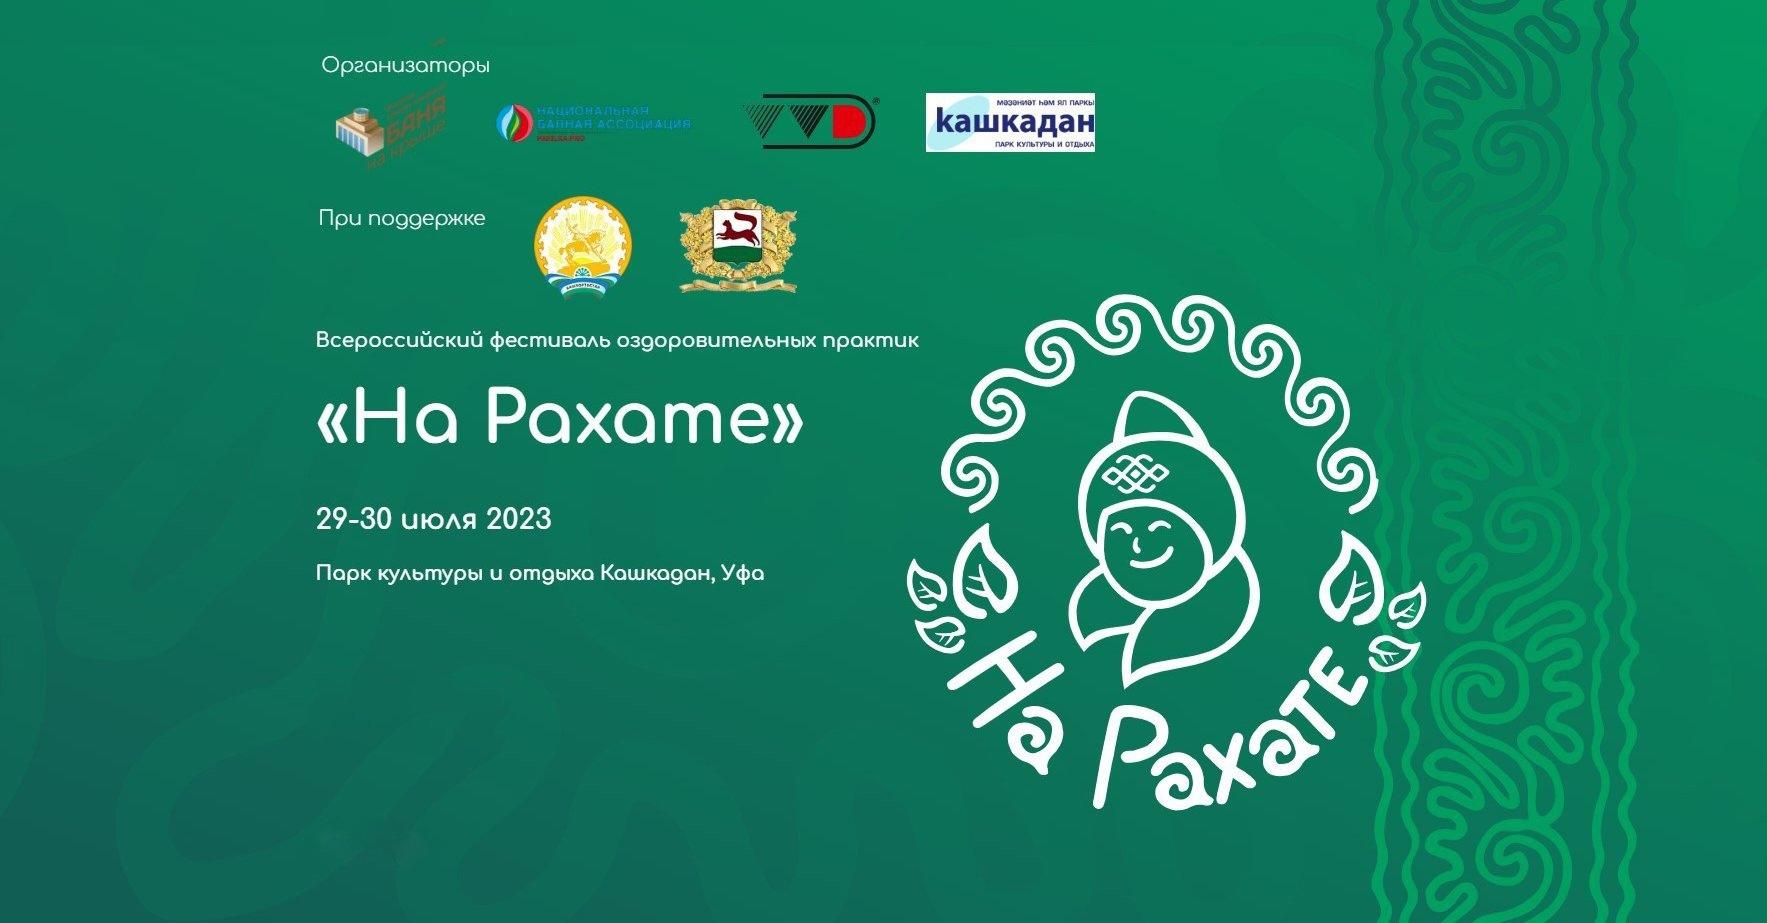 В Уфе пройдет Всероссийский фестиваль оздоровительных практик «На Рахате»